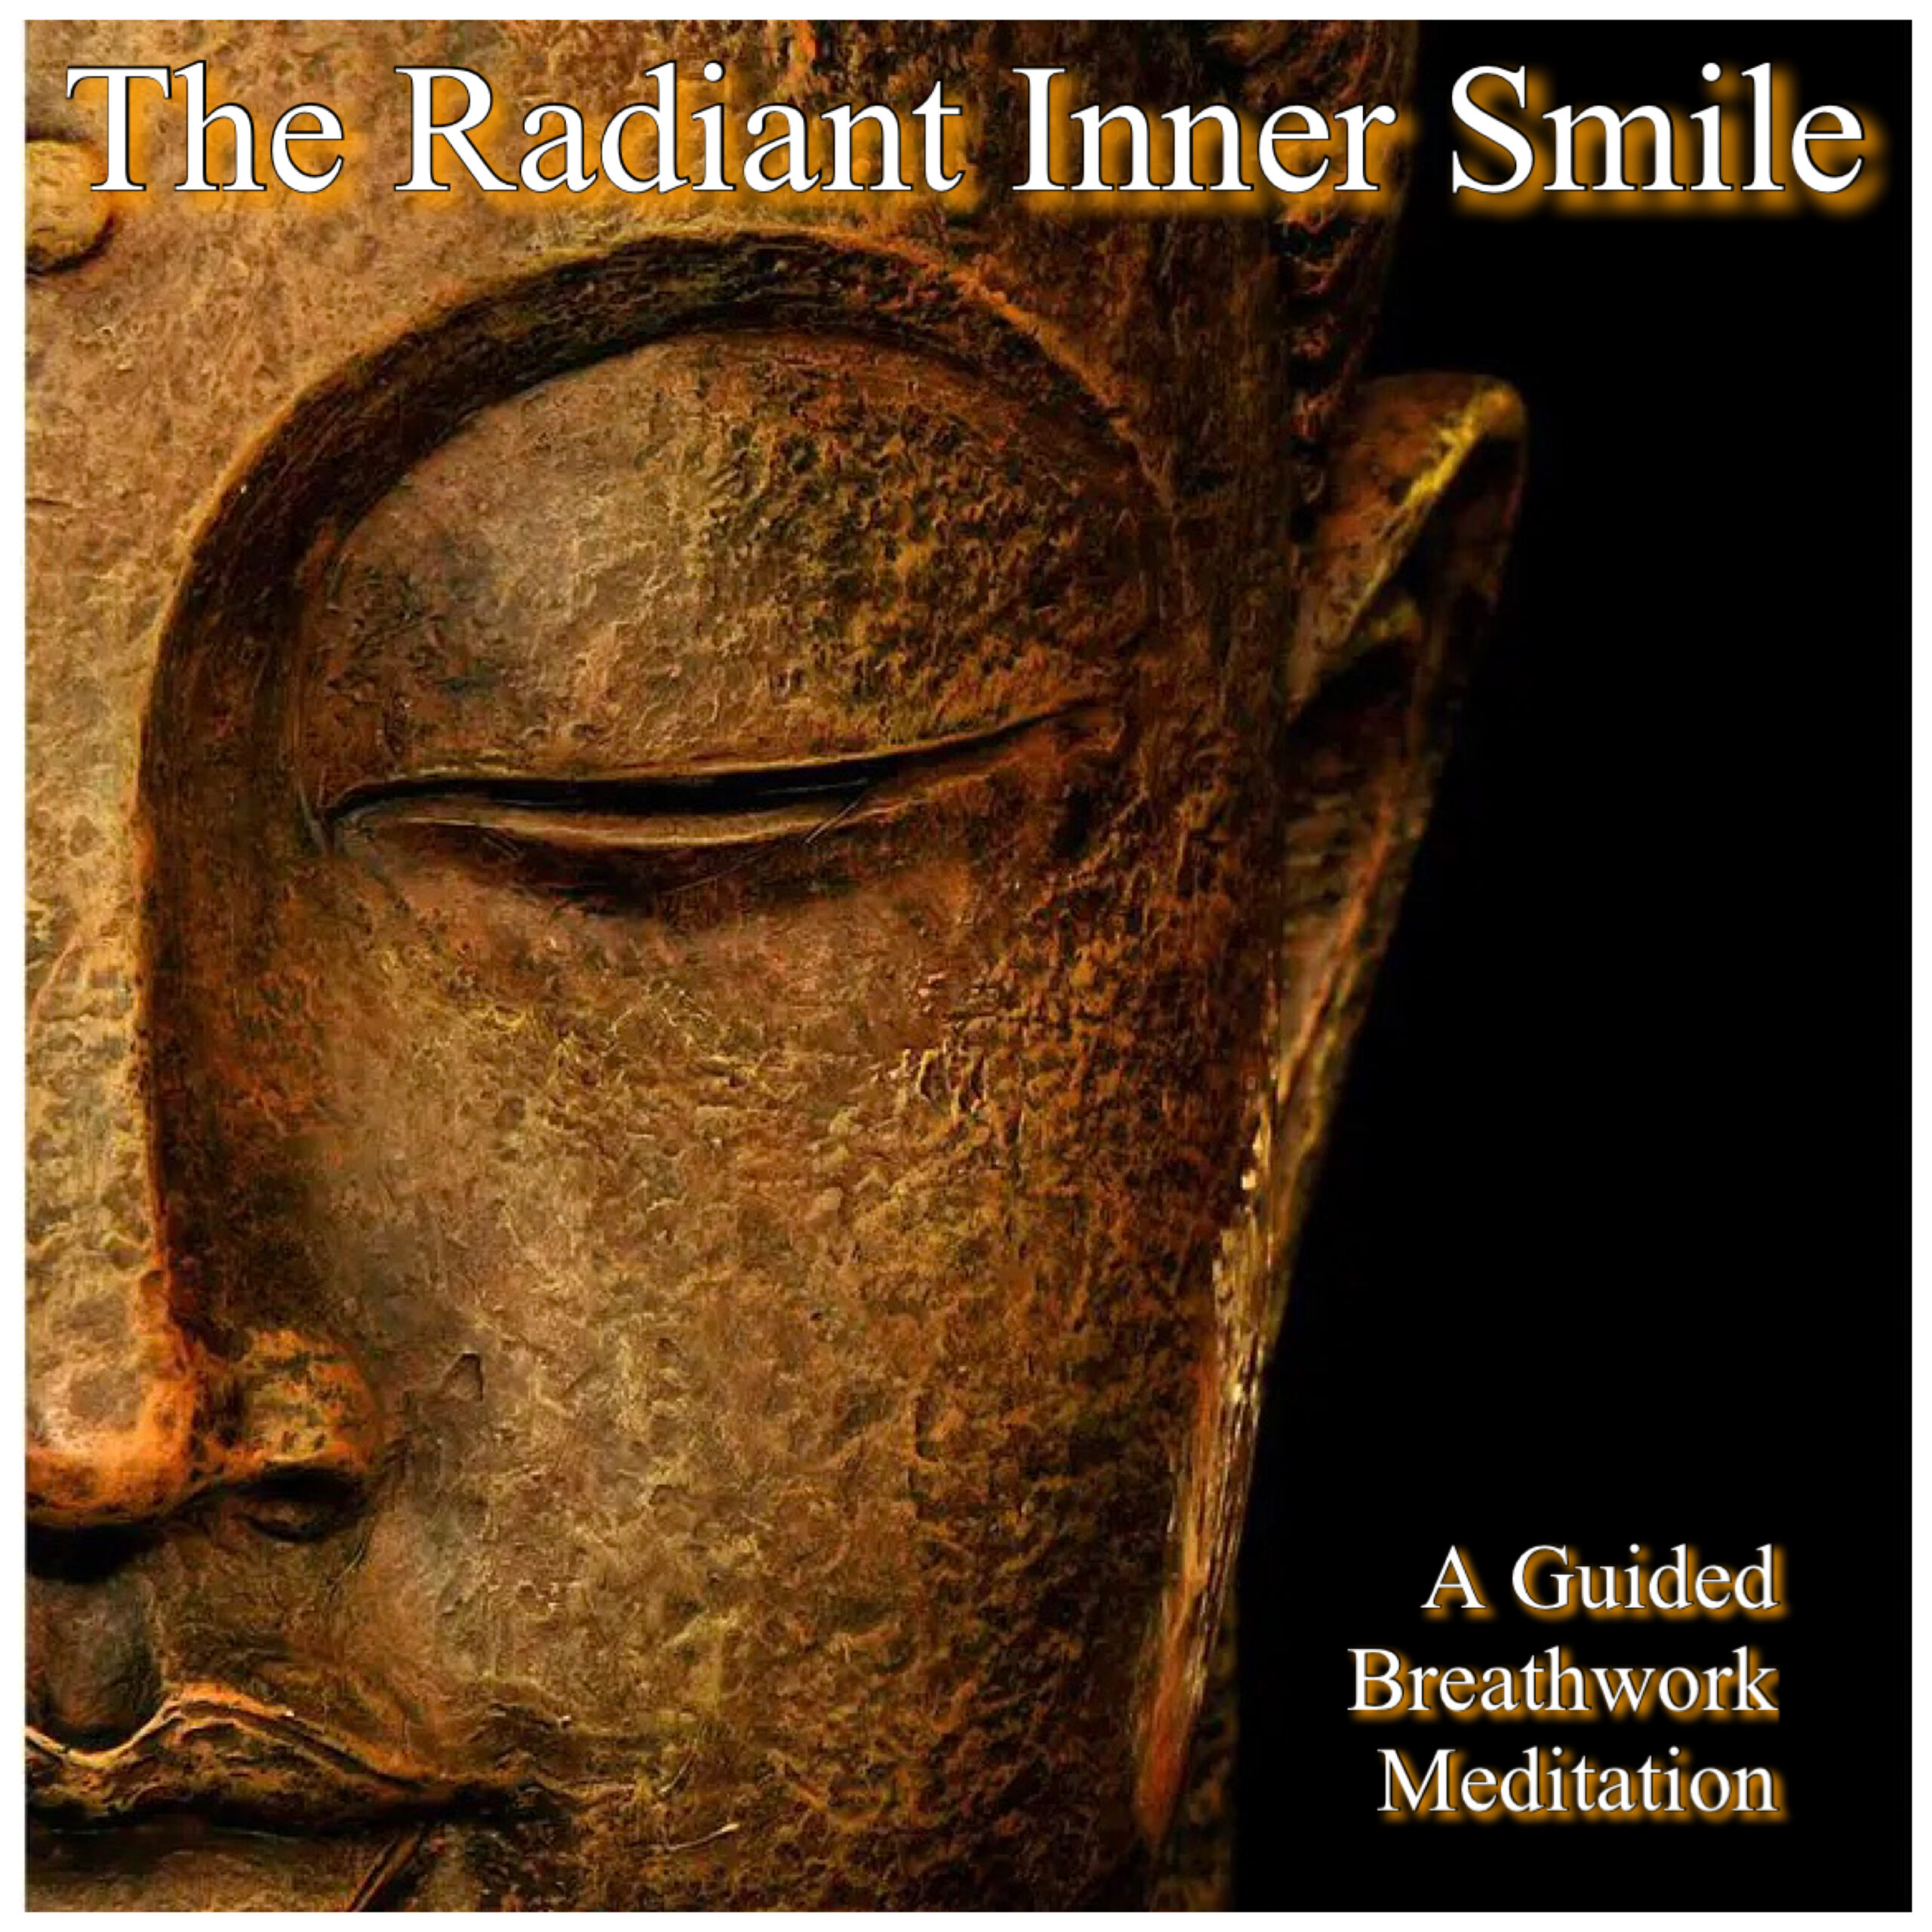 The Radiant Inner Smile